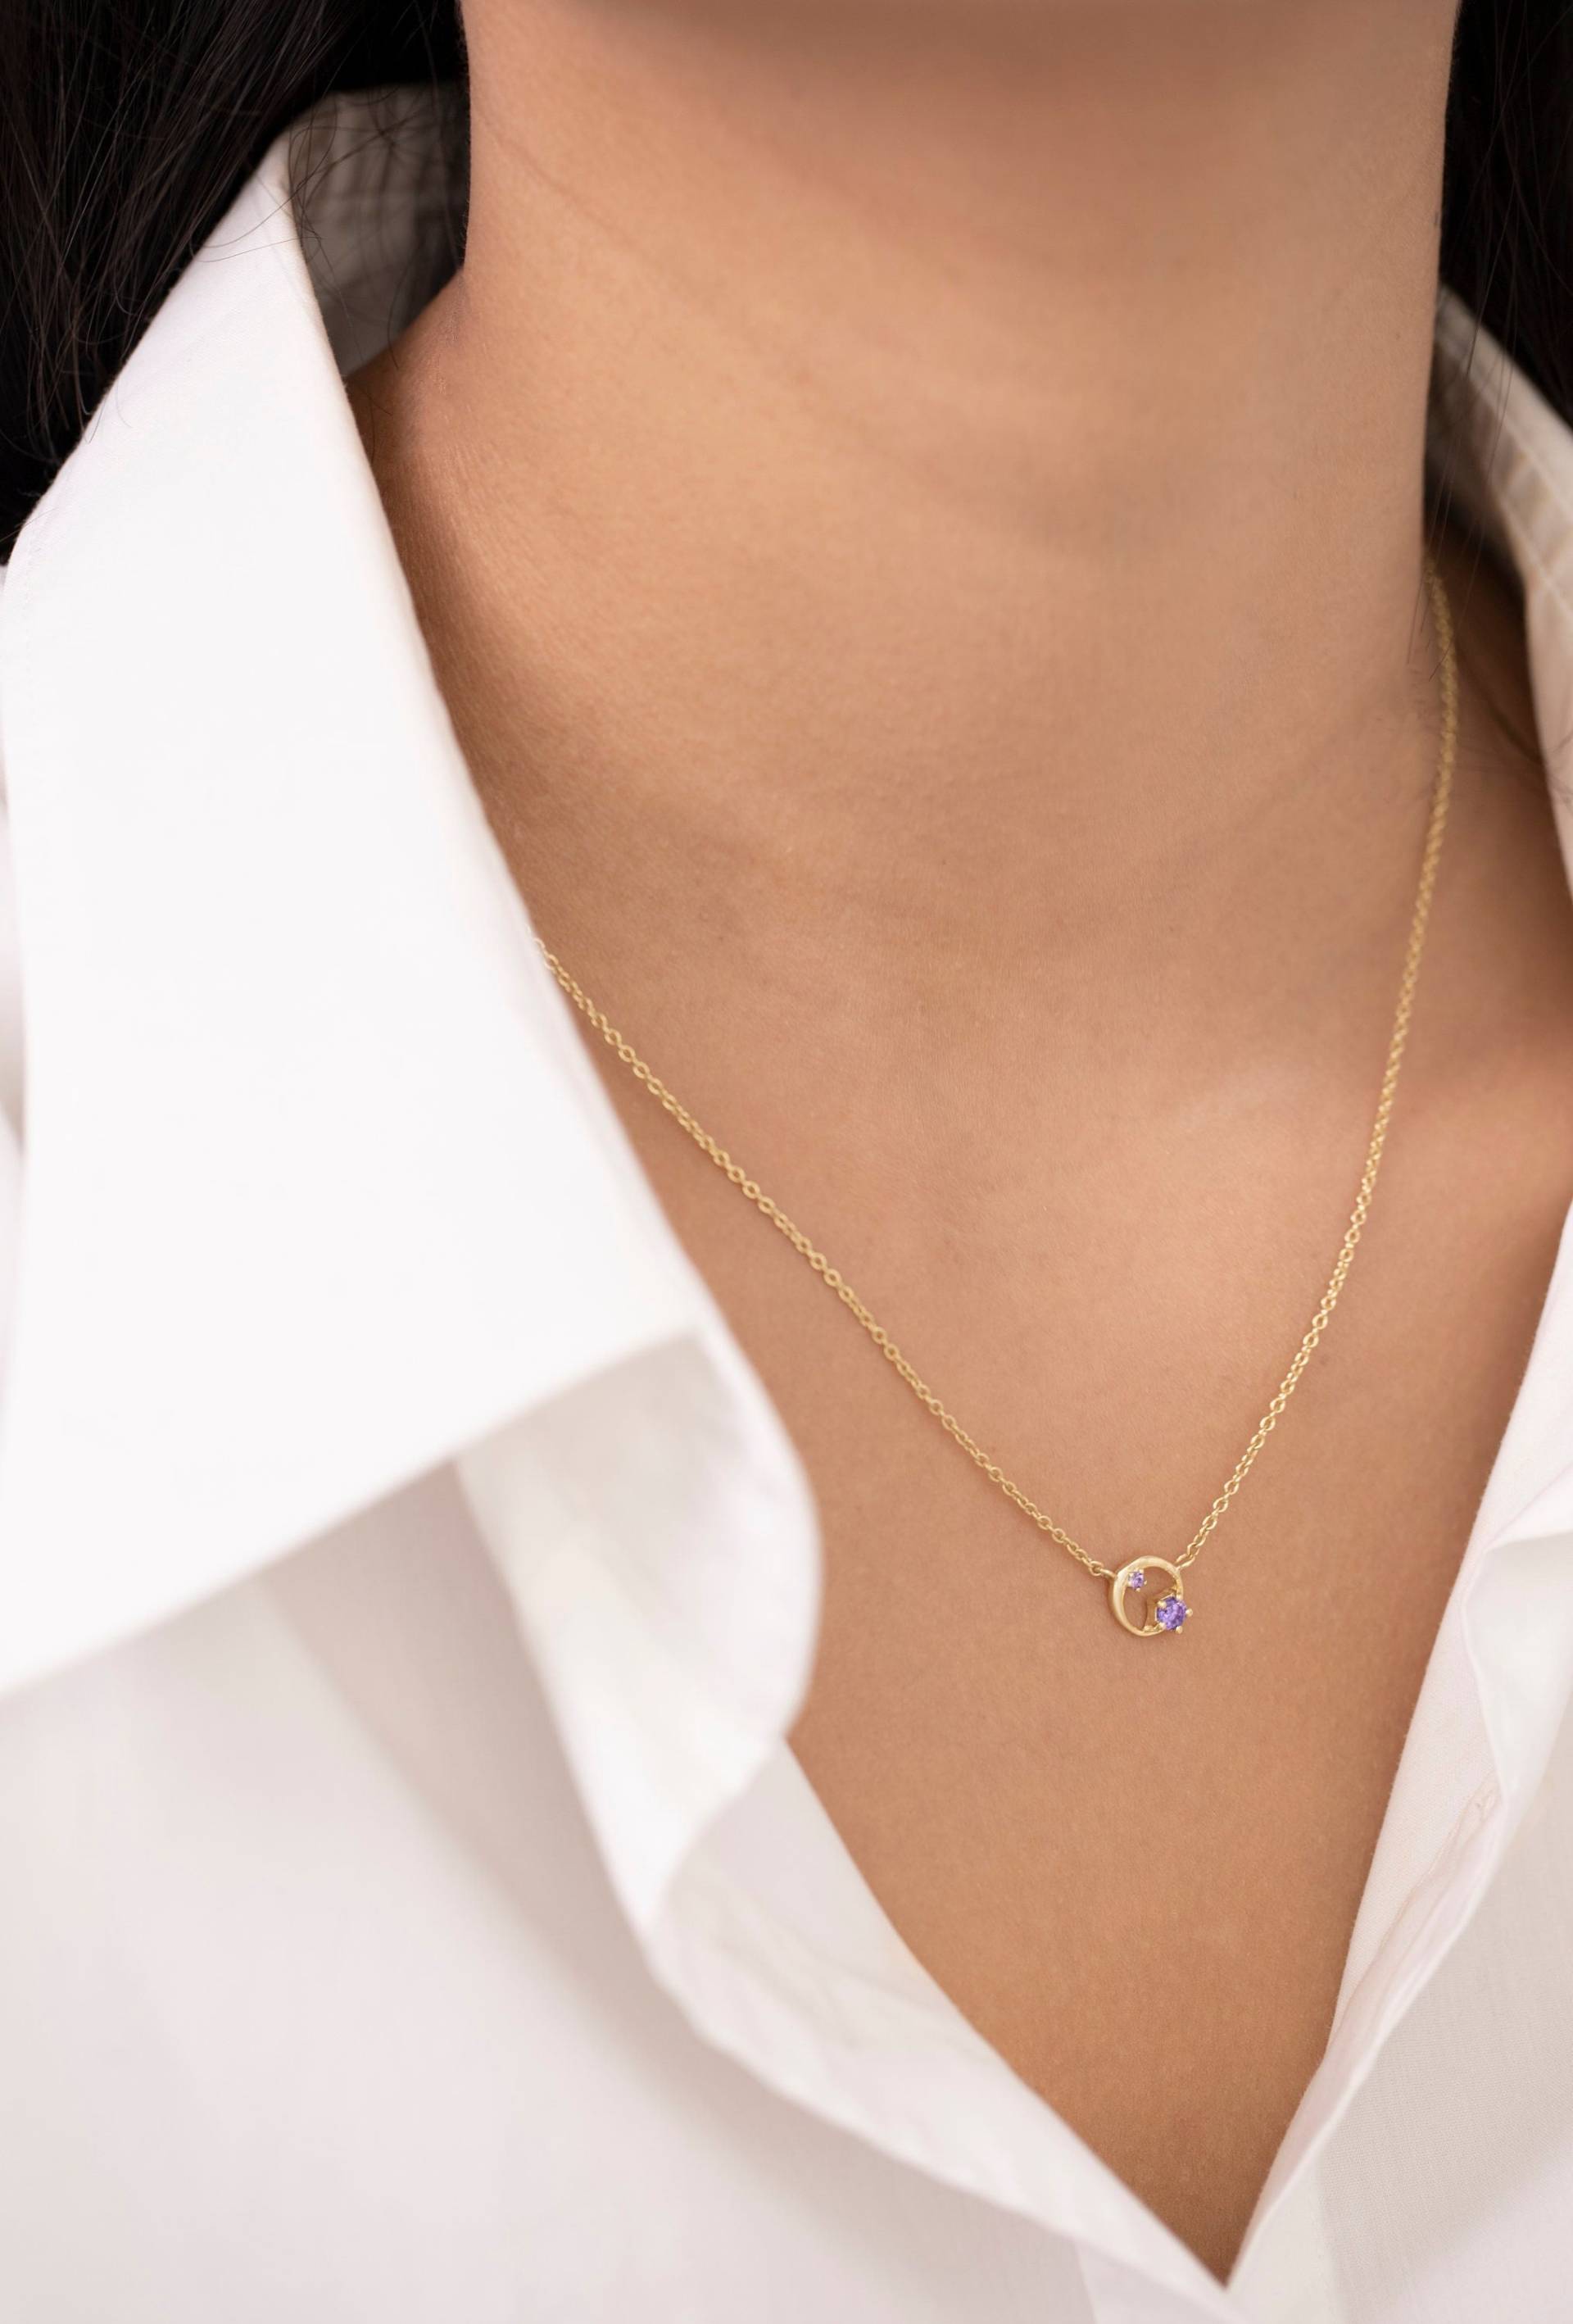 Amethyst Karma Halskette, Februar Geburtsstein Geschenk, 14K Solid Gold Cluster Kleine Kreis Halskette von QFineJewelry